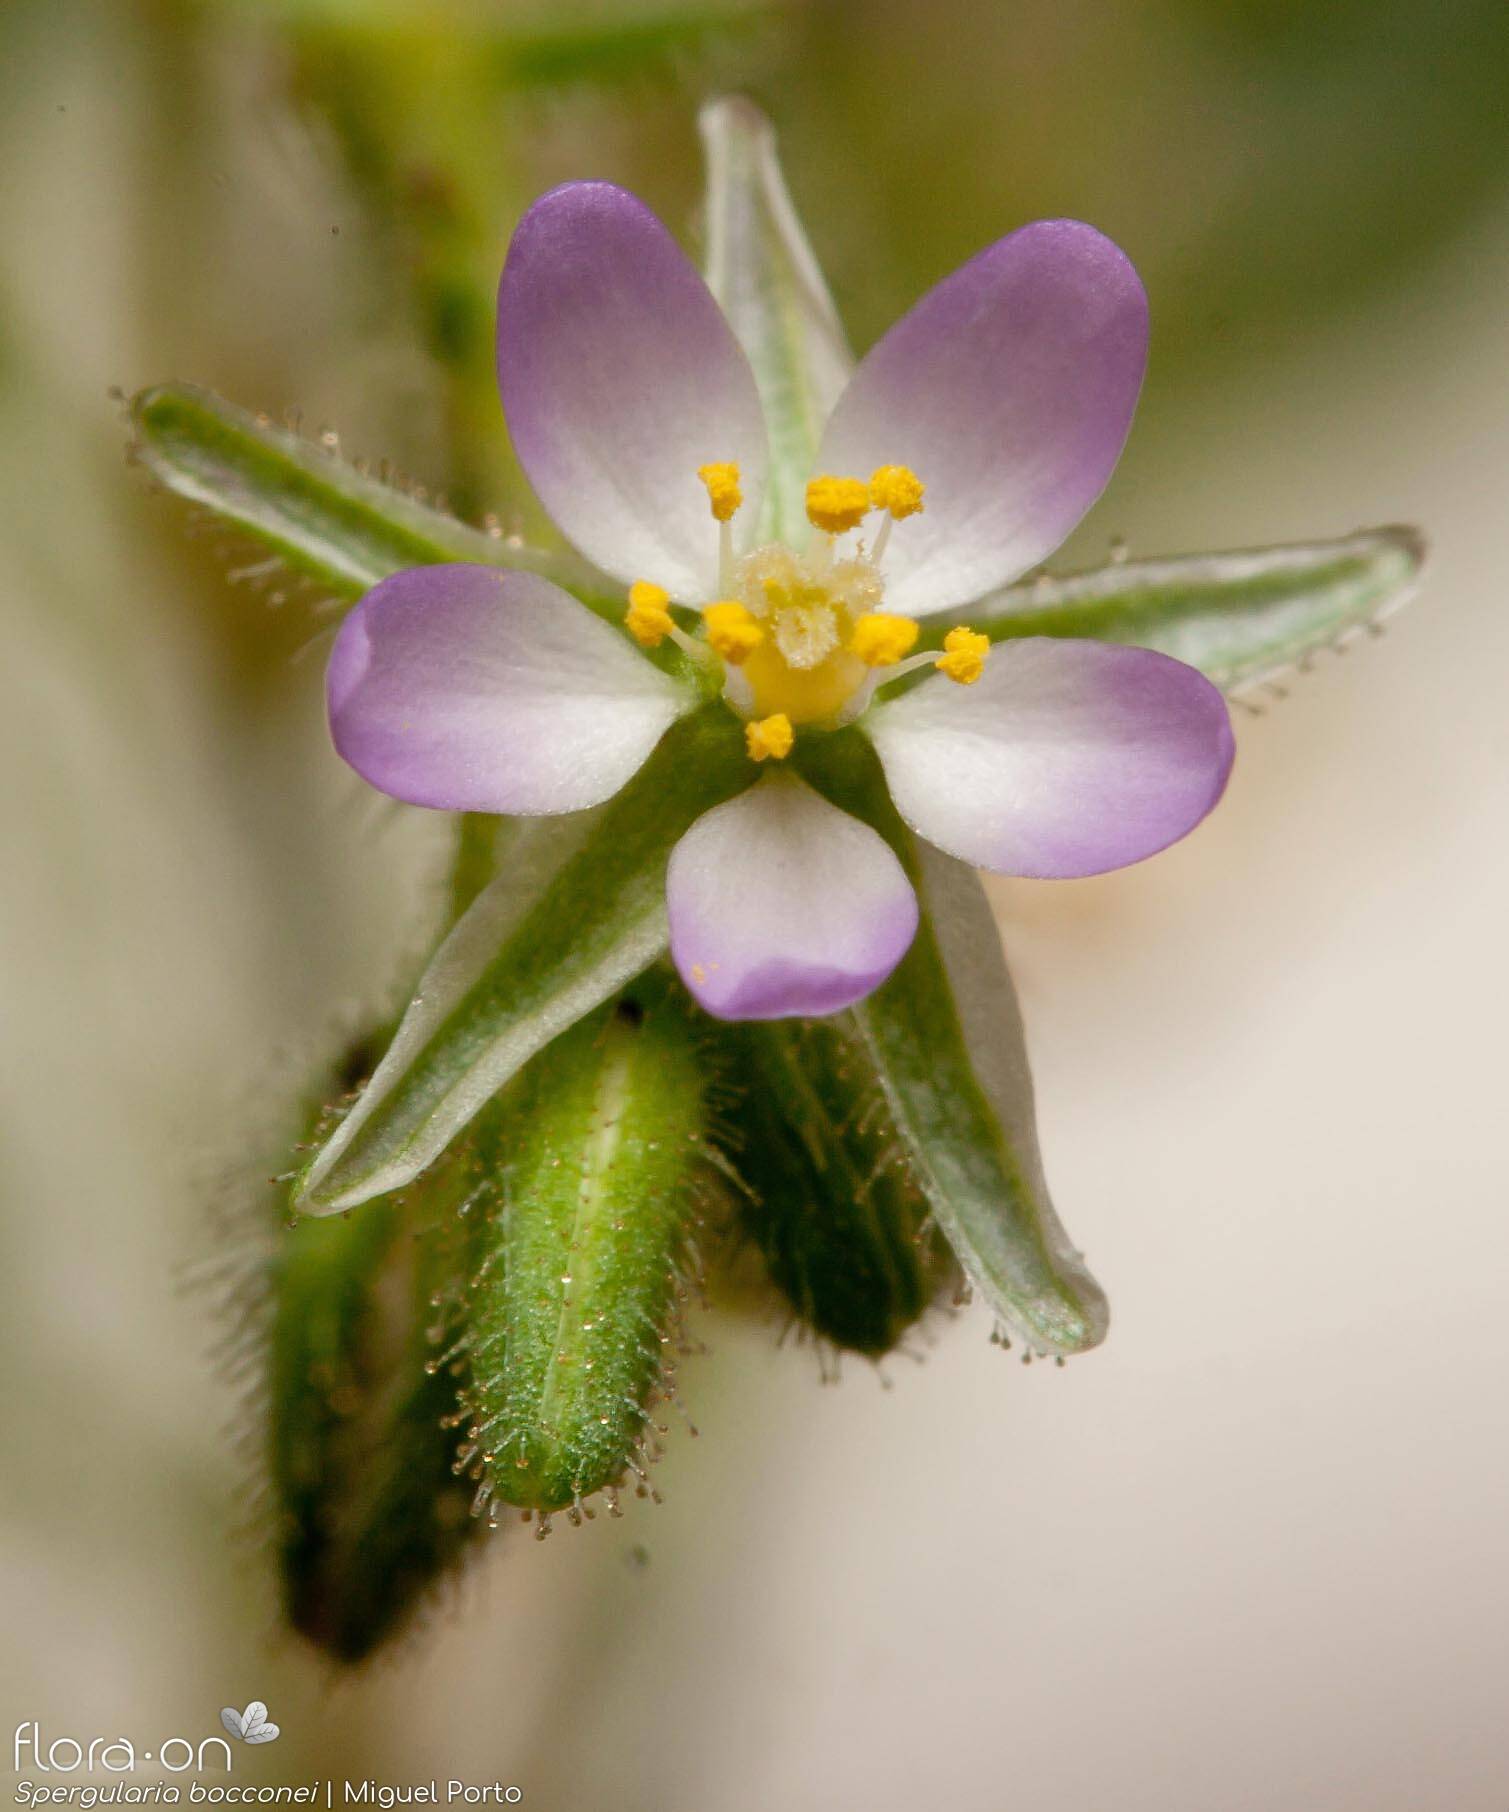 Spergularia bocconei - Flor (close-up) | Miguel Porto; CC BY-NC 4.0